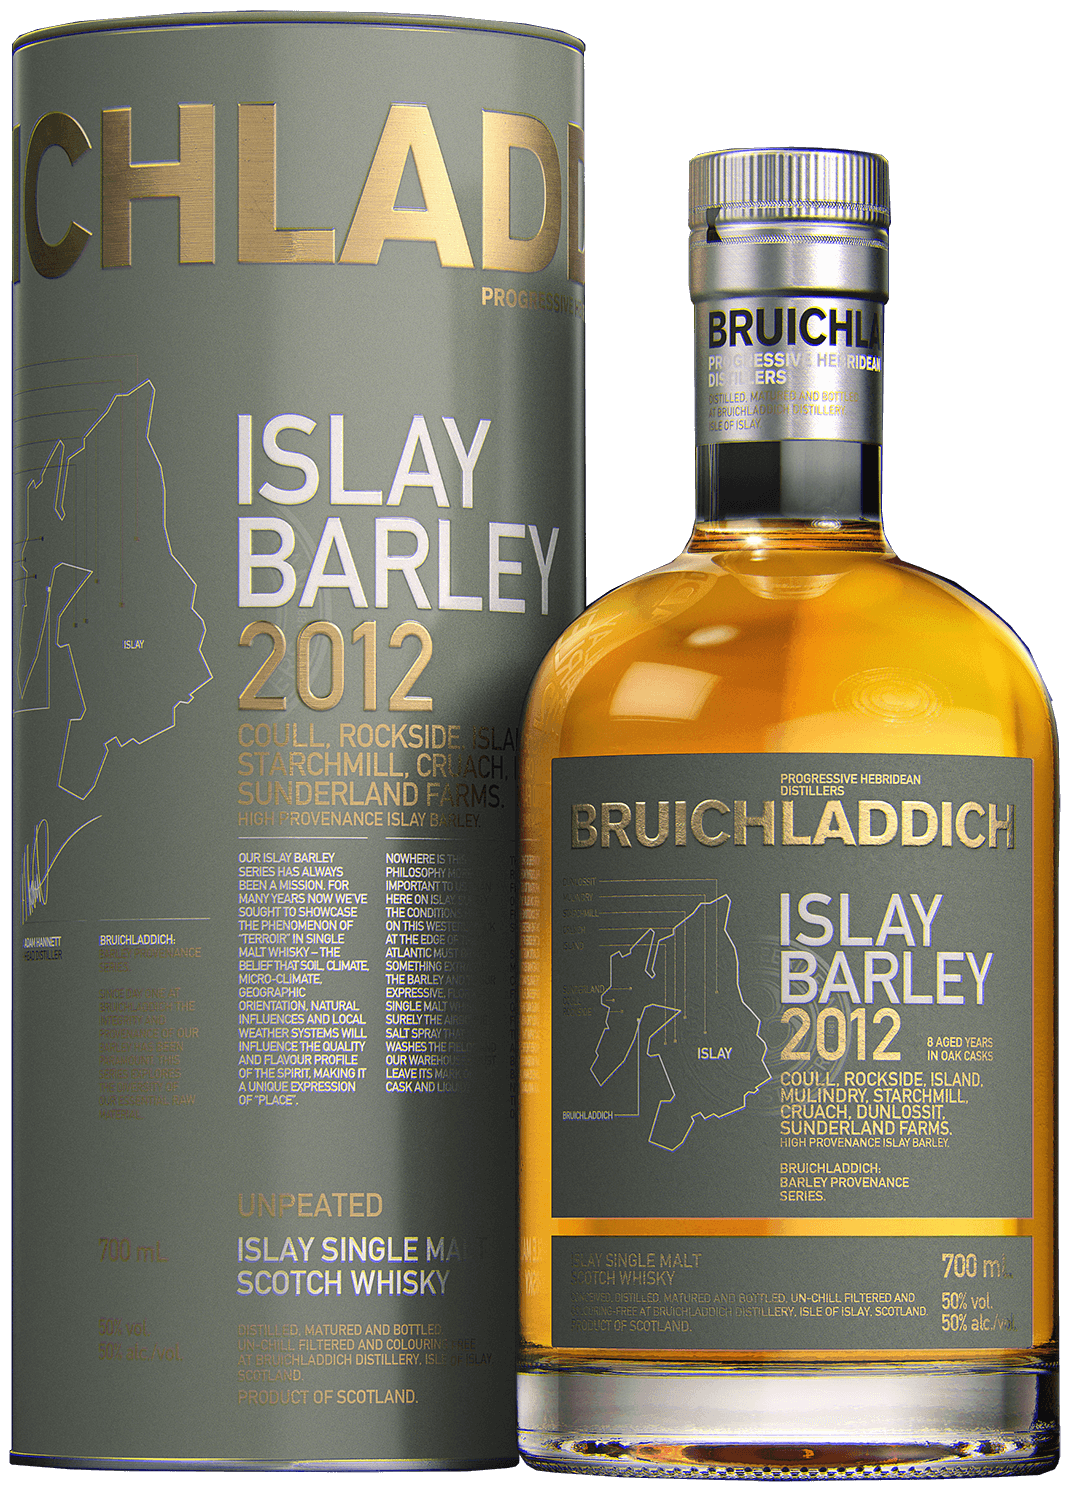 Bruichladdich Islay Barley single malt scotch whisky (gift box) bowmore 15 y o islay single malt scotch whisky gift box